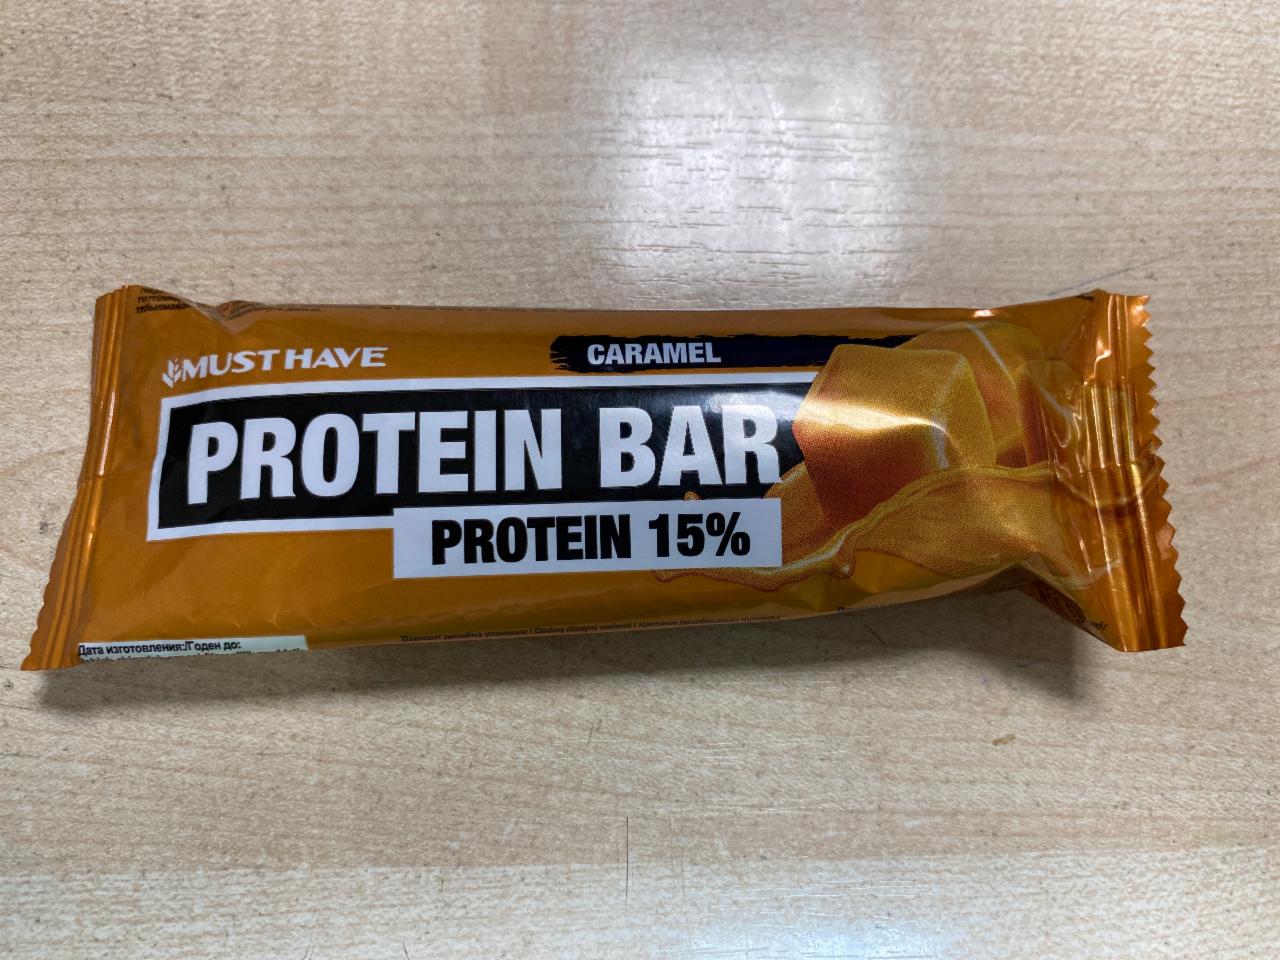 Фото - Батончик протеин-карамель Protein bar caramel 15% Must have